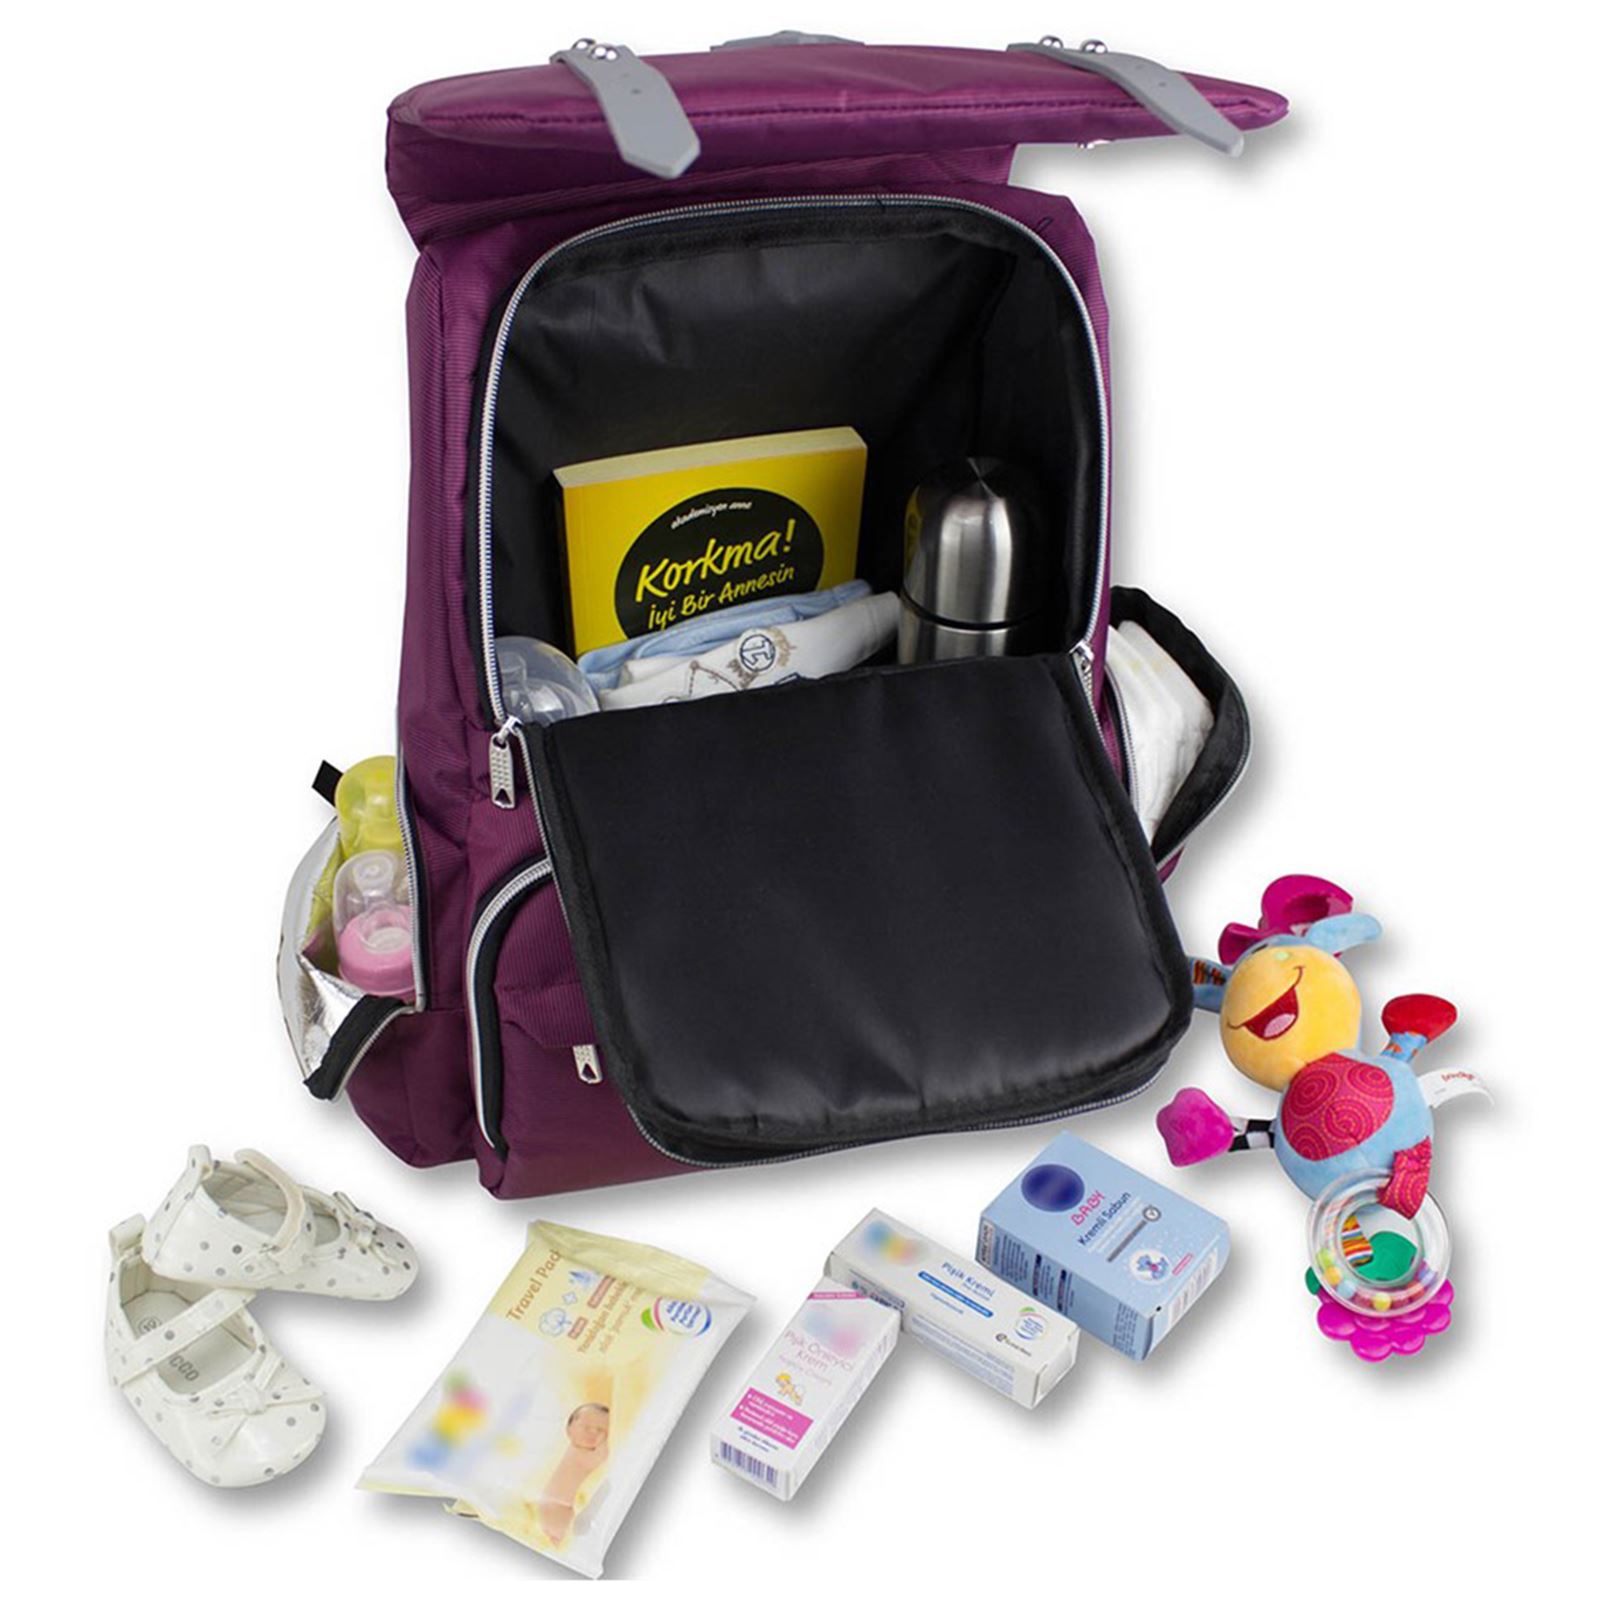 My Valice Smart Bag Mother Star Usb'li Bebek Bakım Çantası Turuncu